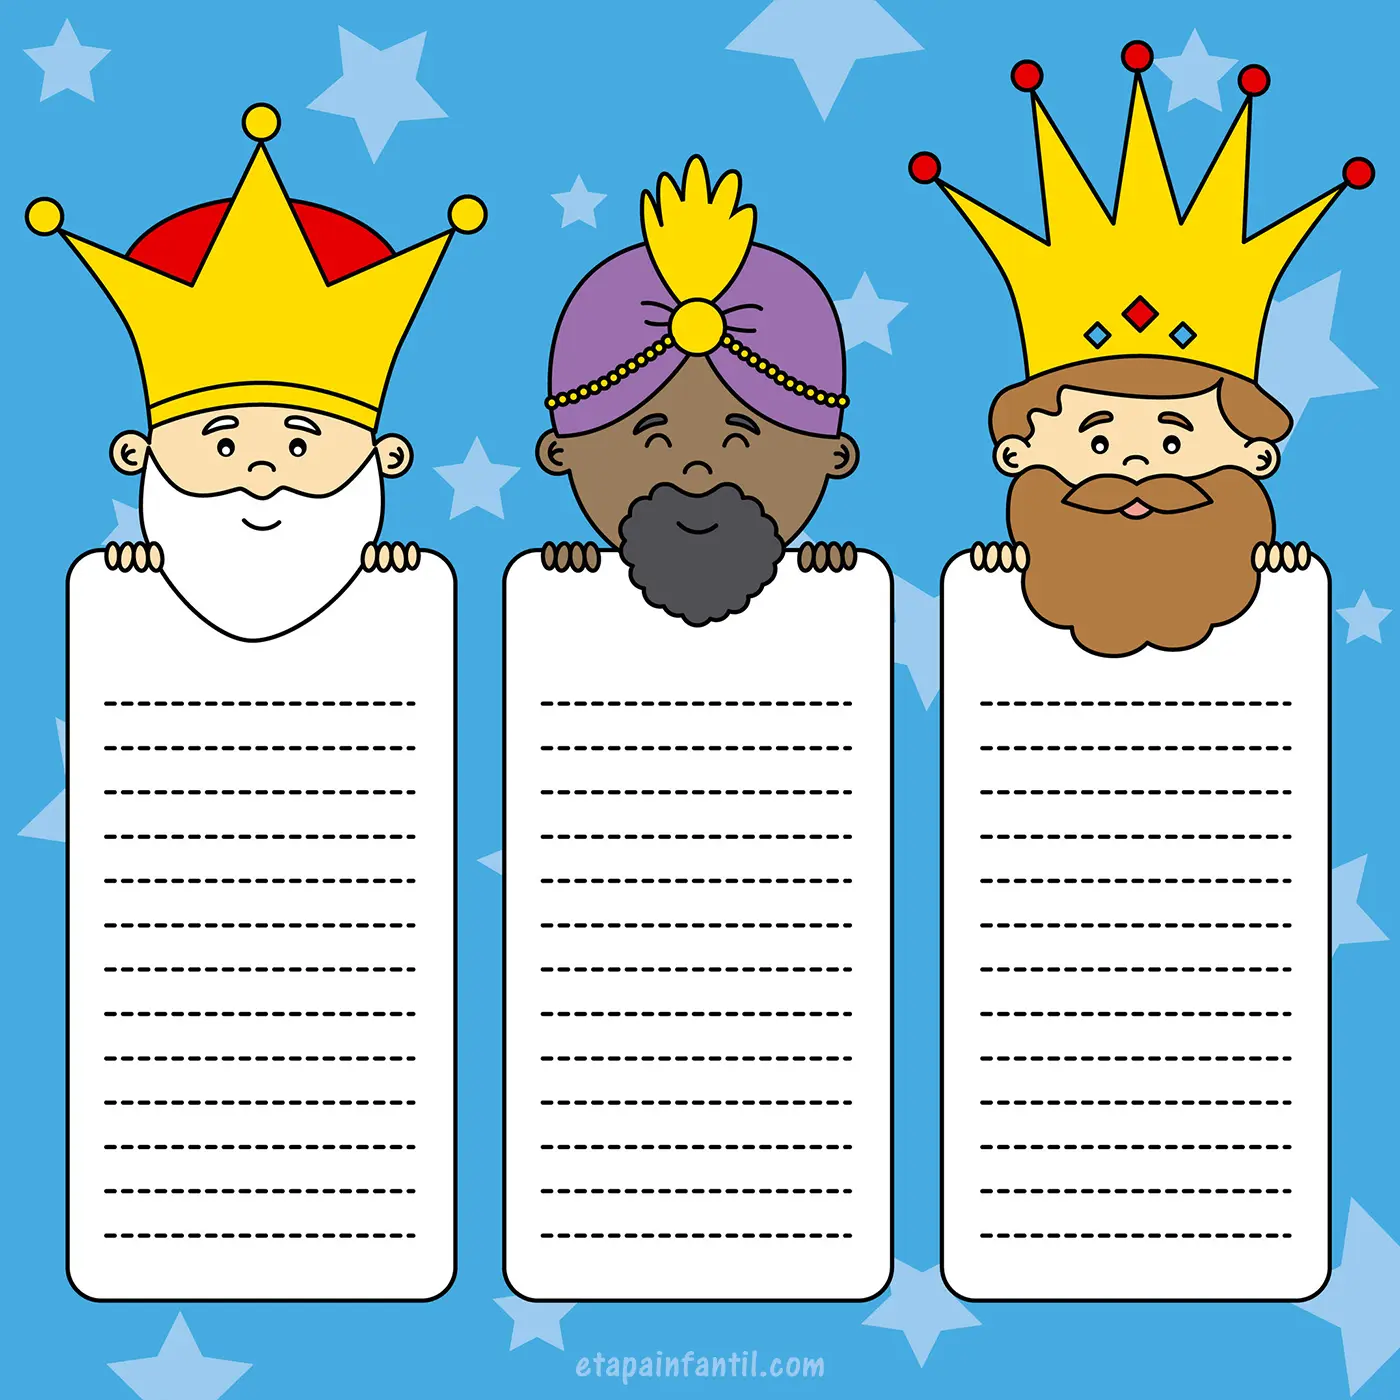 Carta A Reyes Magos Plantillas de cartas para los Reyes Magos | EDUCACIÓN 3.0